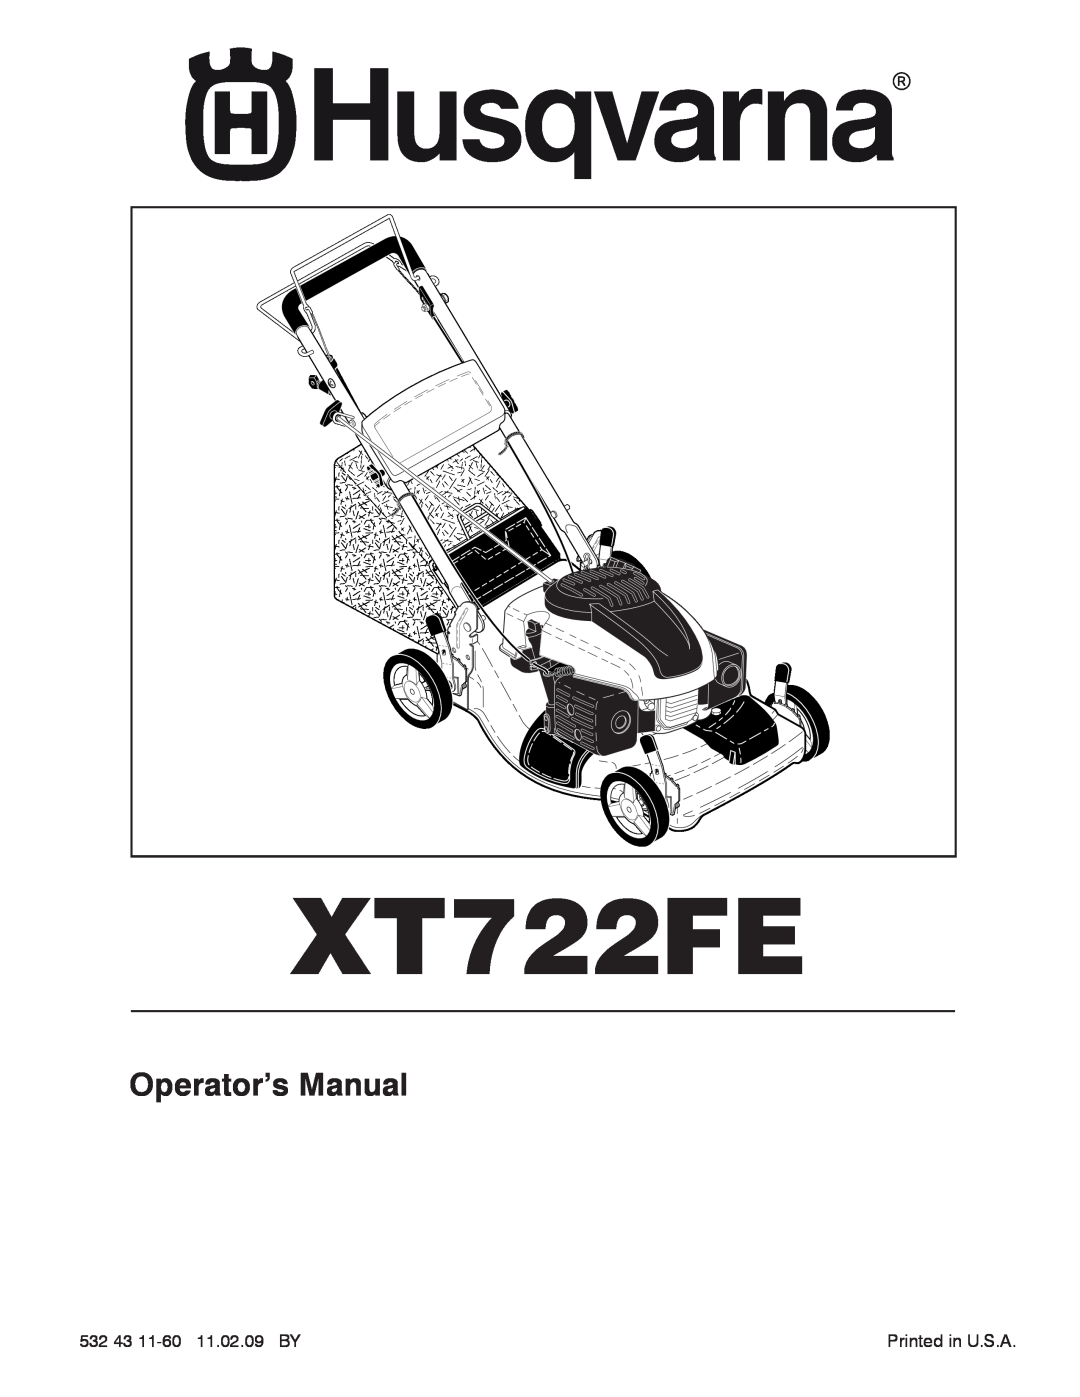 Husqvarna XT722FE manual Operator’s Manual 